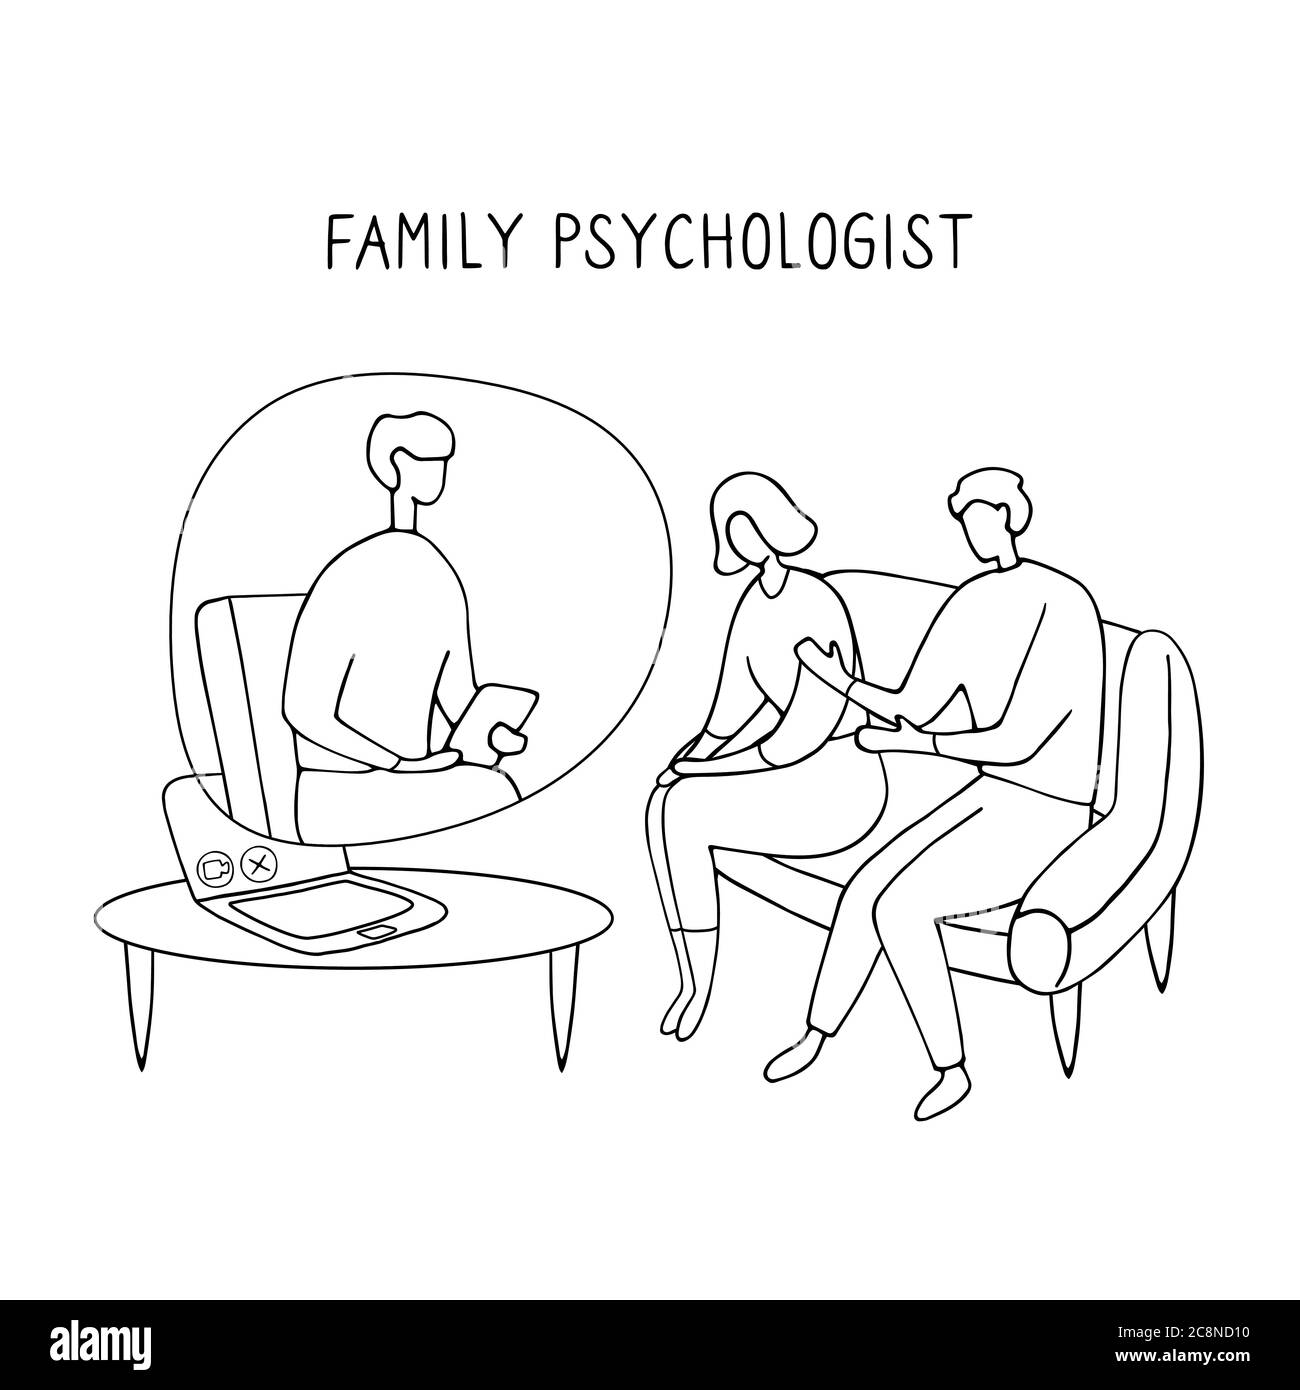 Familienpsychologe. Online-Beratung für Paare. Patienten bei psychologischer Beratung. Lineare Doodle-Illustration Stock Vektor